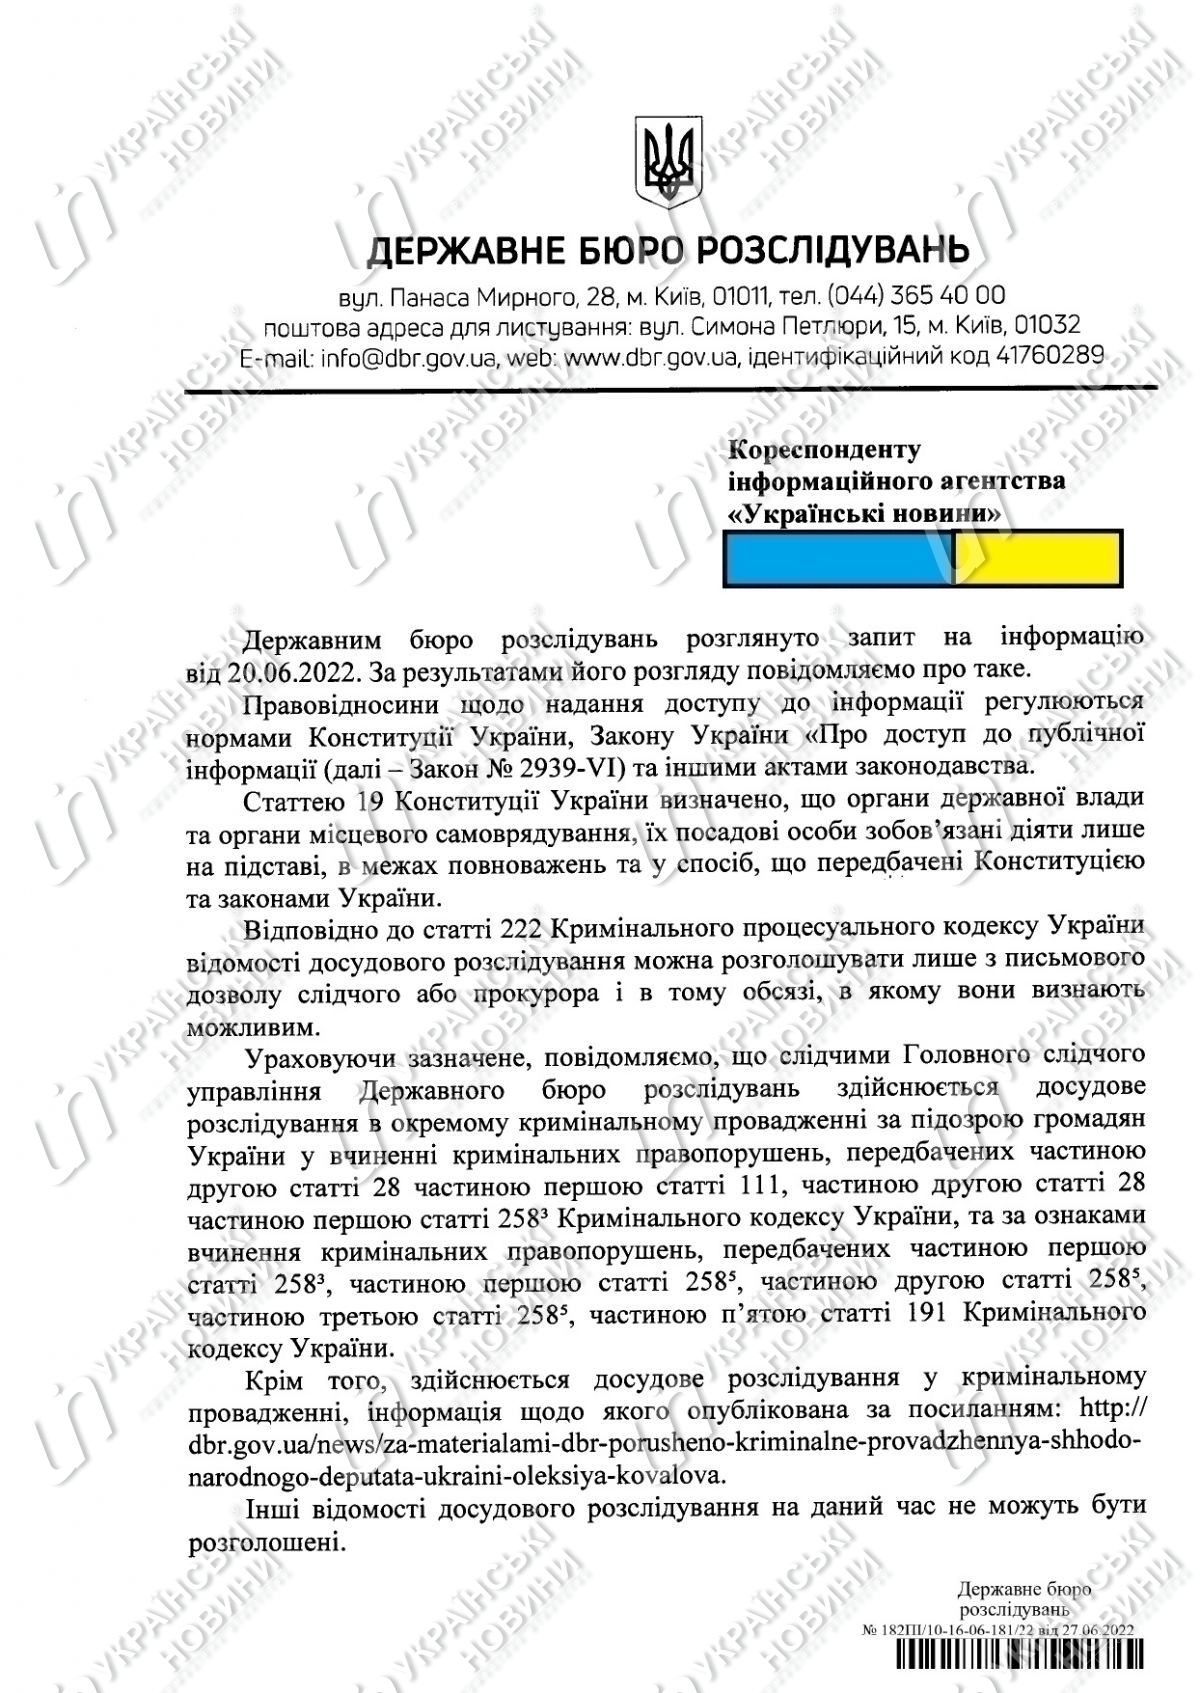 В ГБР не сообщают, на какой стадии расследования находится дело Порошенко - 1 - изображение